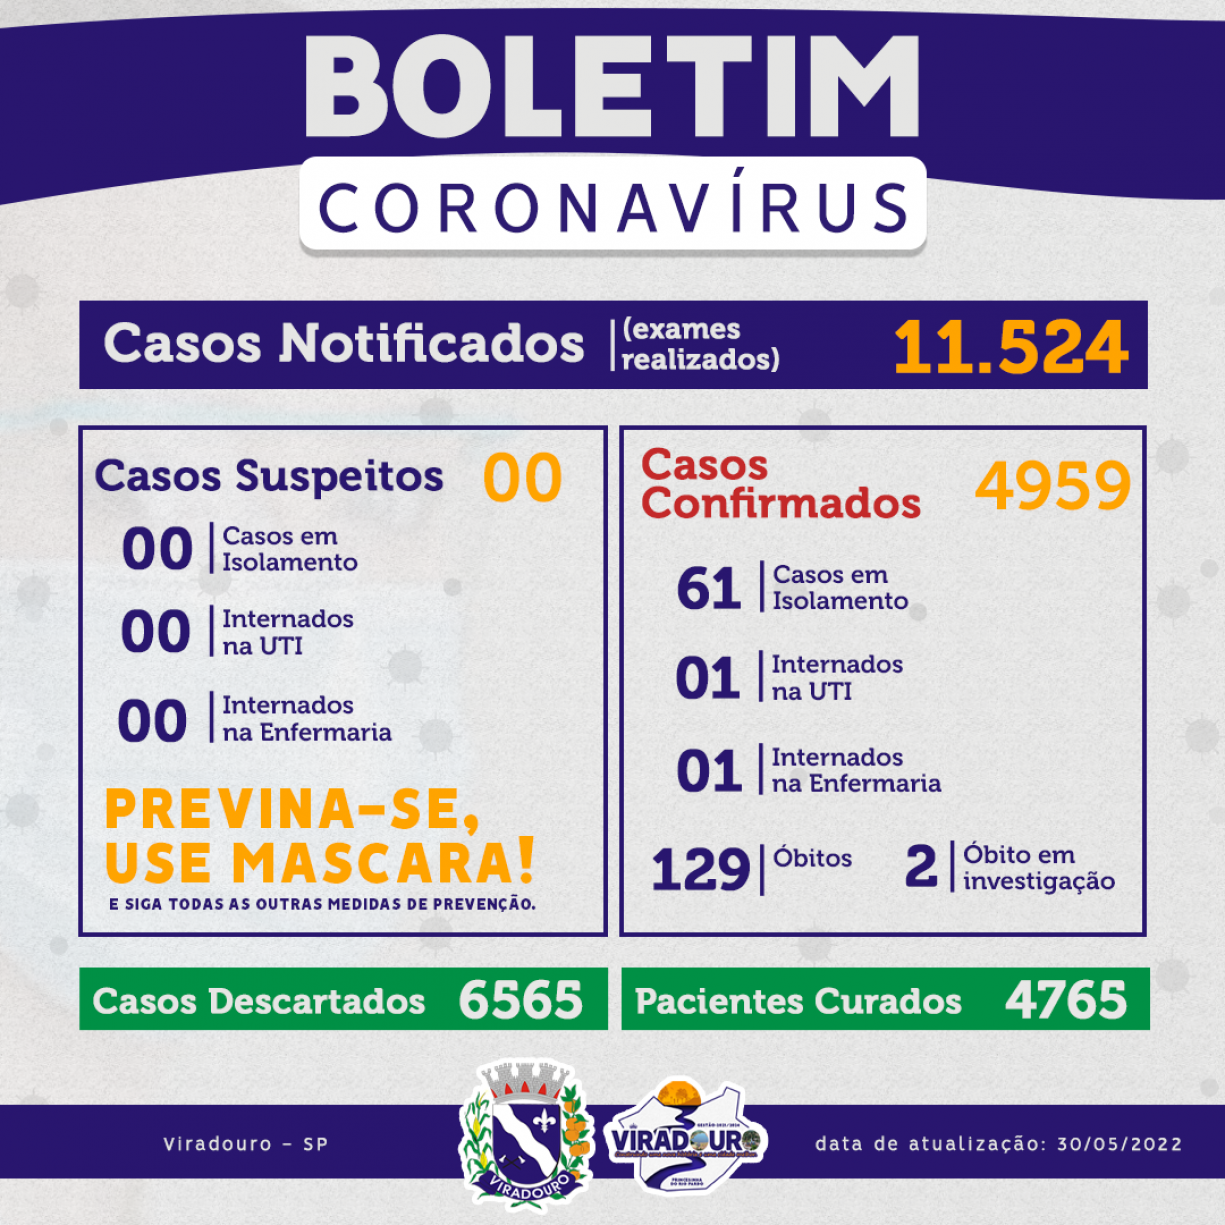 	CORONAVÍRUS: BOLETIM EPIDEMIOLÓGICO (ATUALIZAÇÃO 30/05/2022)